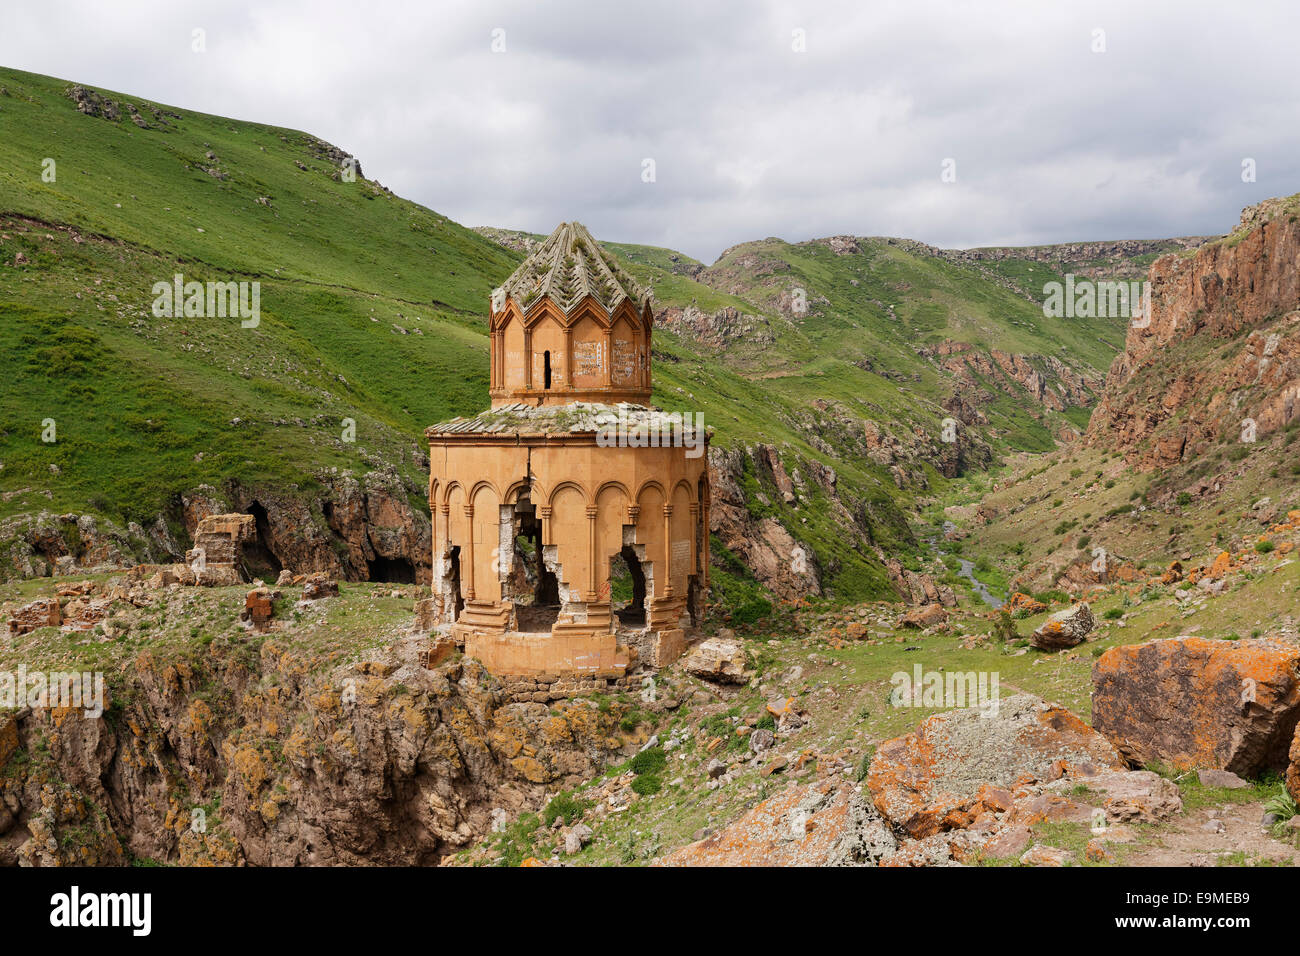 Khtzkonk ou monastère arménien Beşkilise Manastırı, Digor, Kars, Province, Région de l'Anatolie orientale de l'Anatolie, Turquie Banque D'Images